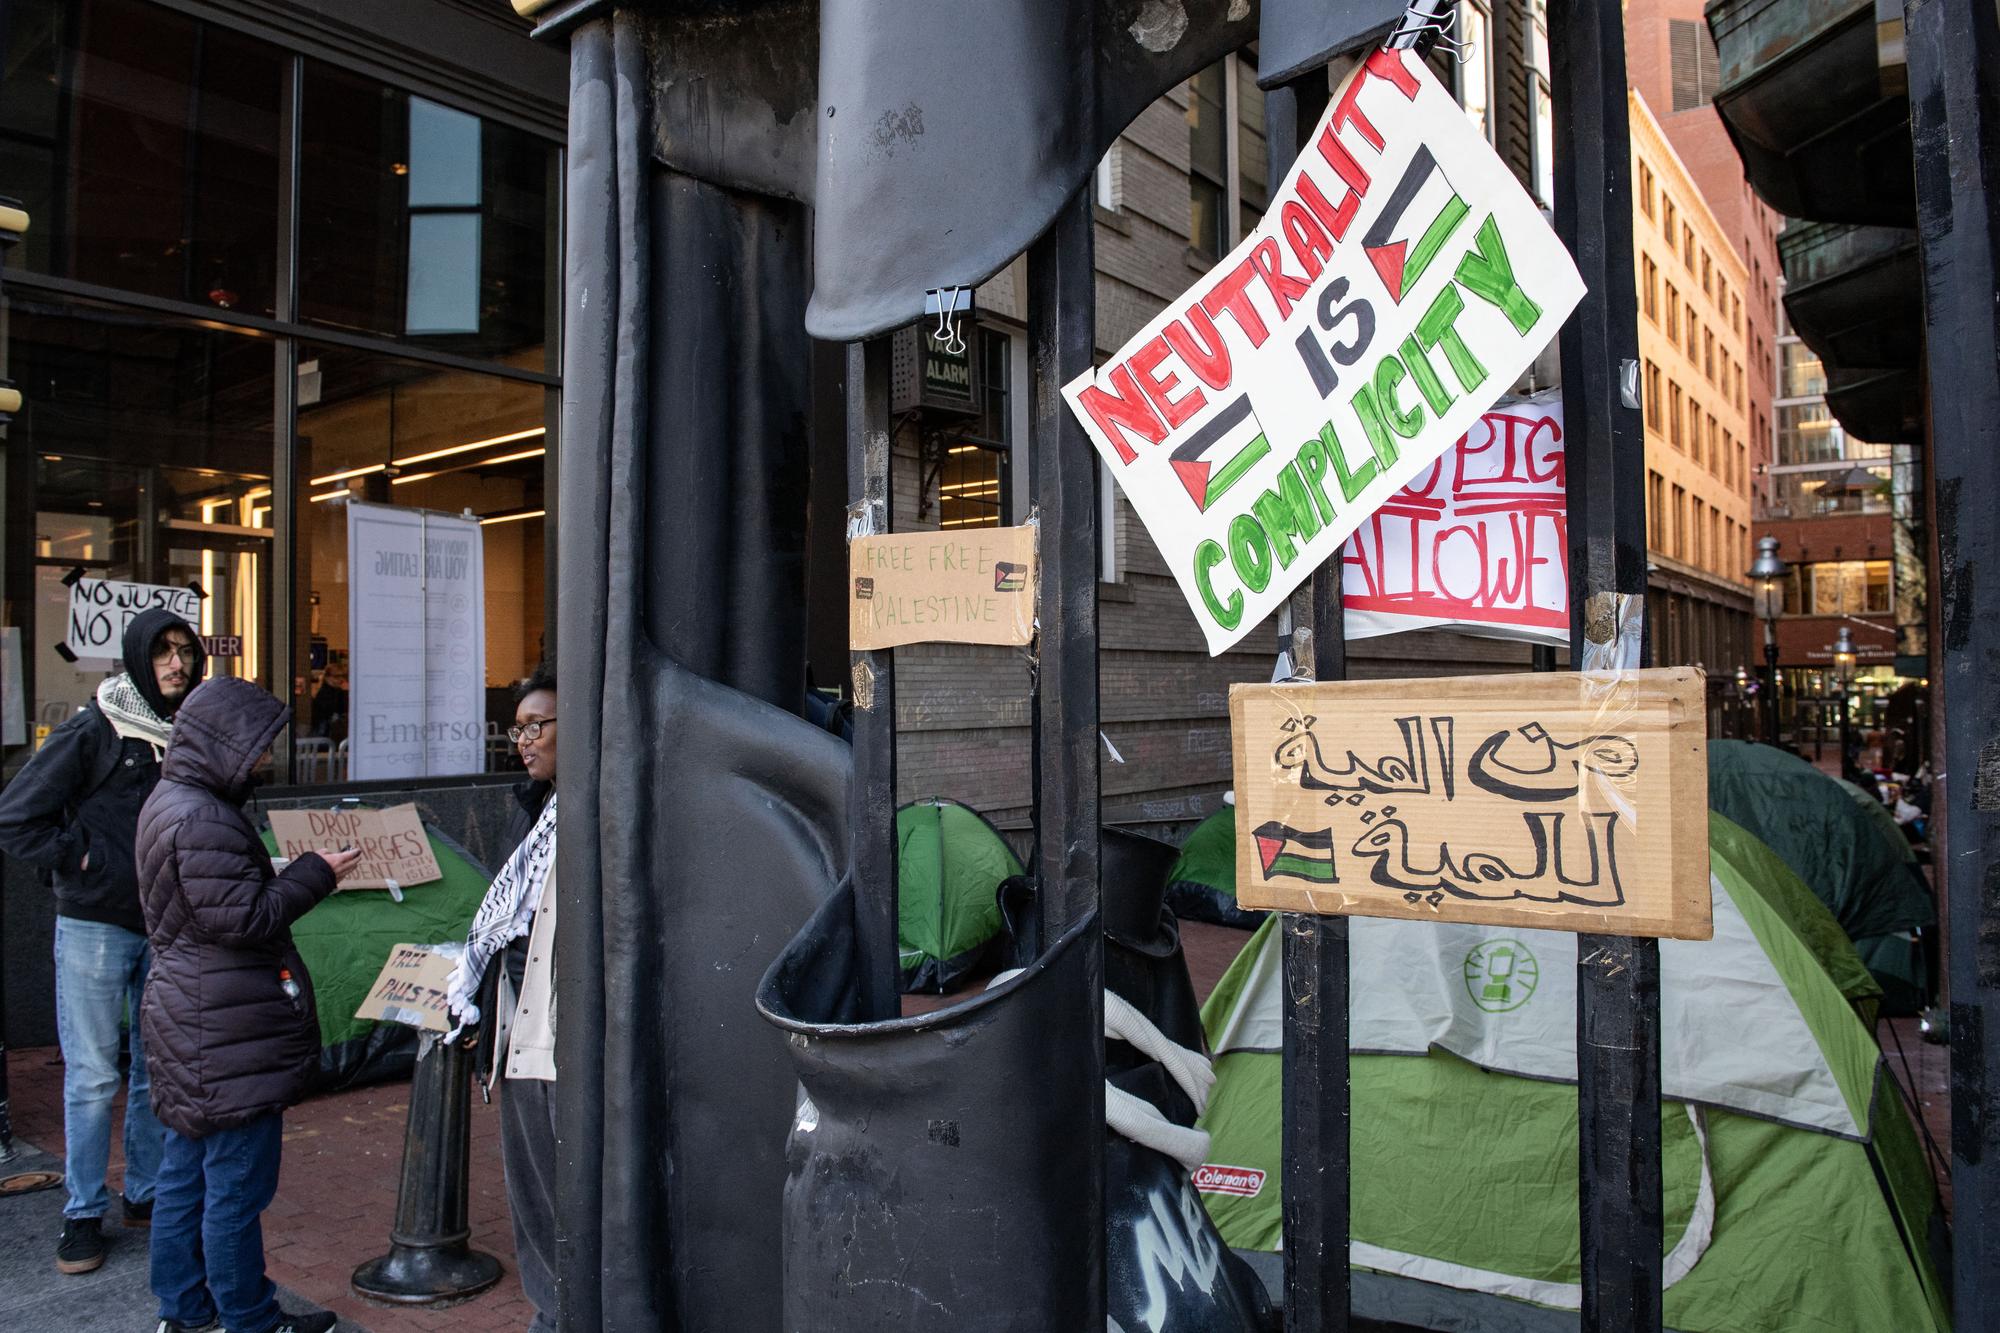 Un campement pro-palestinien s'est aussi mis en place au Emerson College de Boston. [AFP - JOSEPH PREZIOSO]